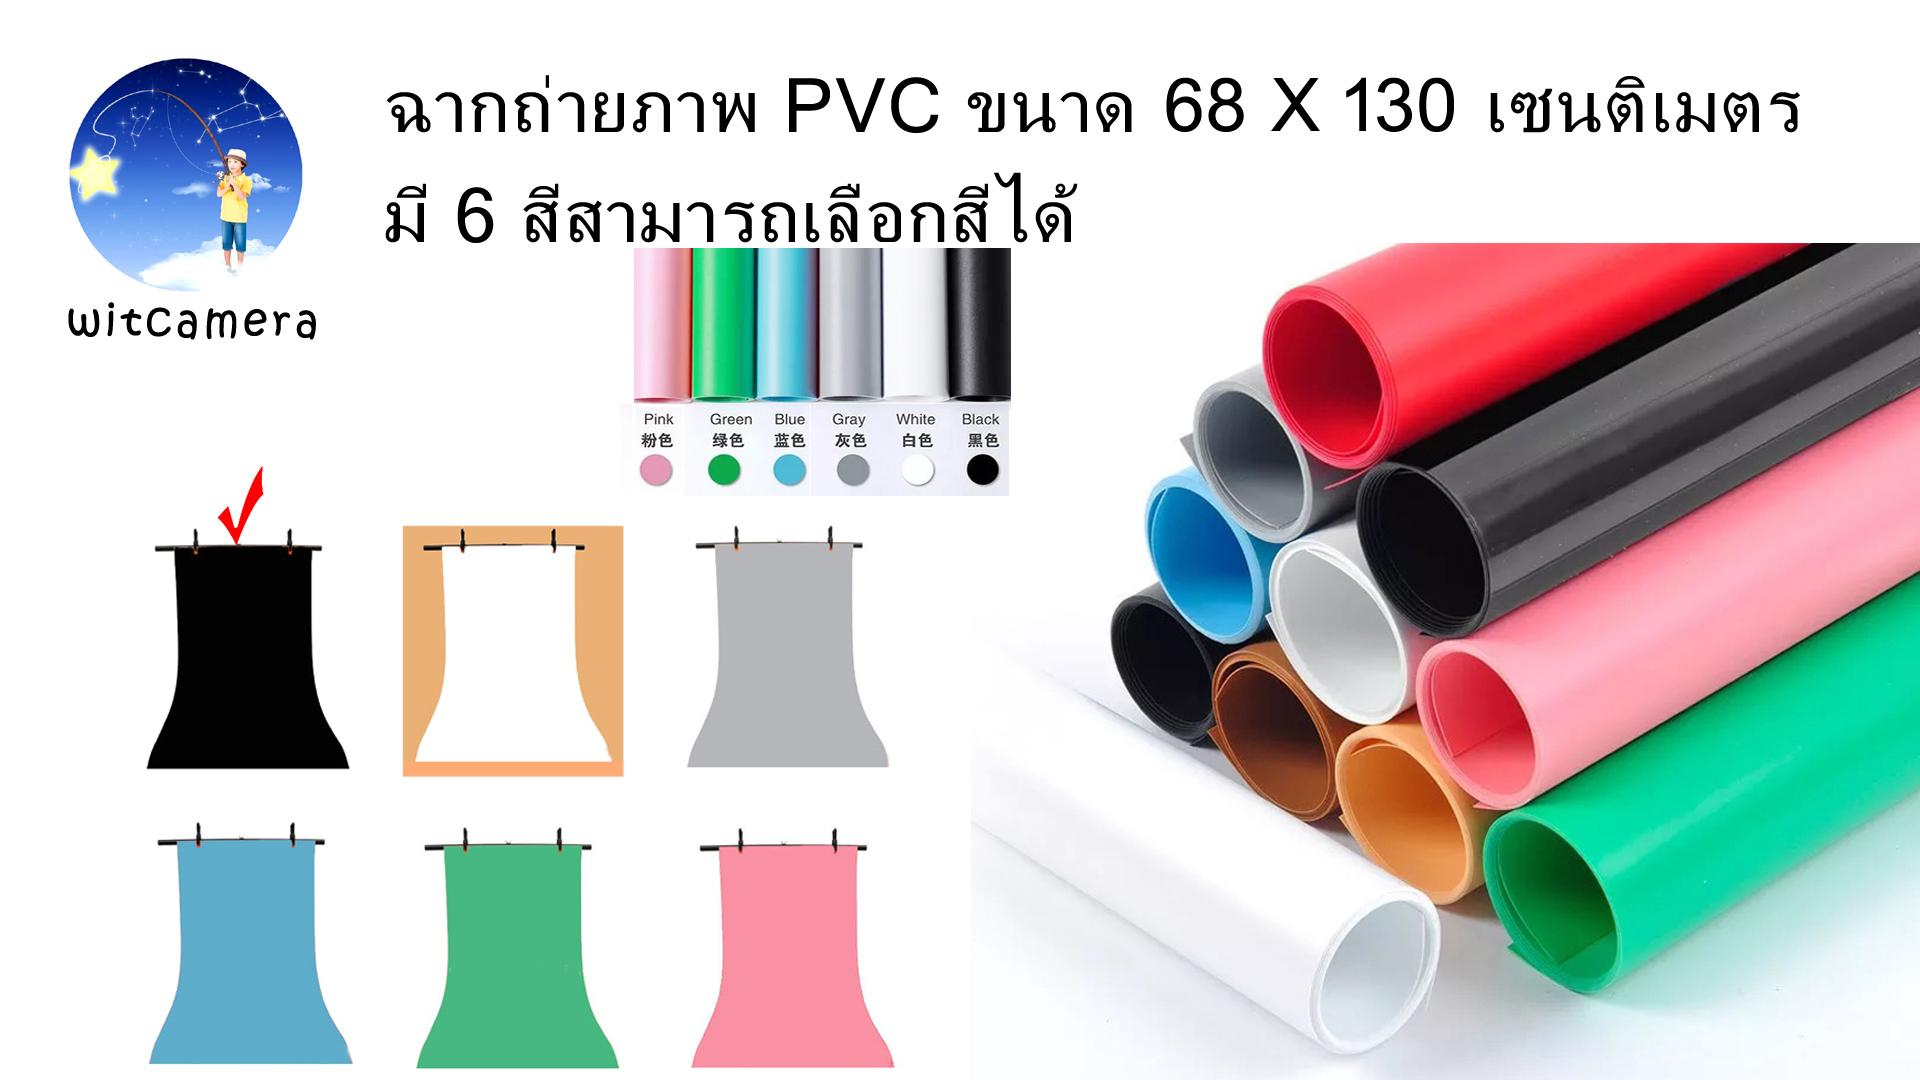 ฉากถ่ายภาพ PVC ขนาด 68 x 130 เซนติเมตร มี 6 สีสามารถเลือกสีได้ PVC photo studio backdrop board 68x130cm have 6 colors for choosing